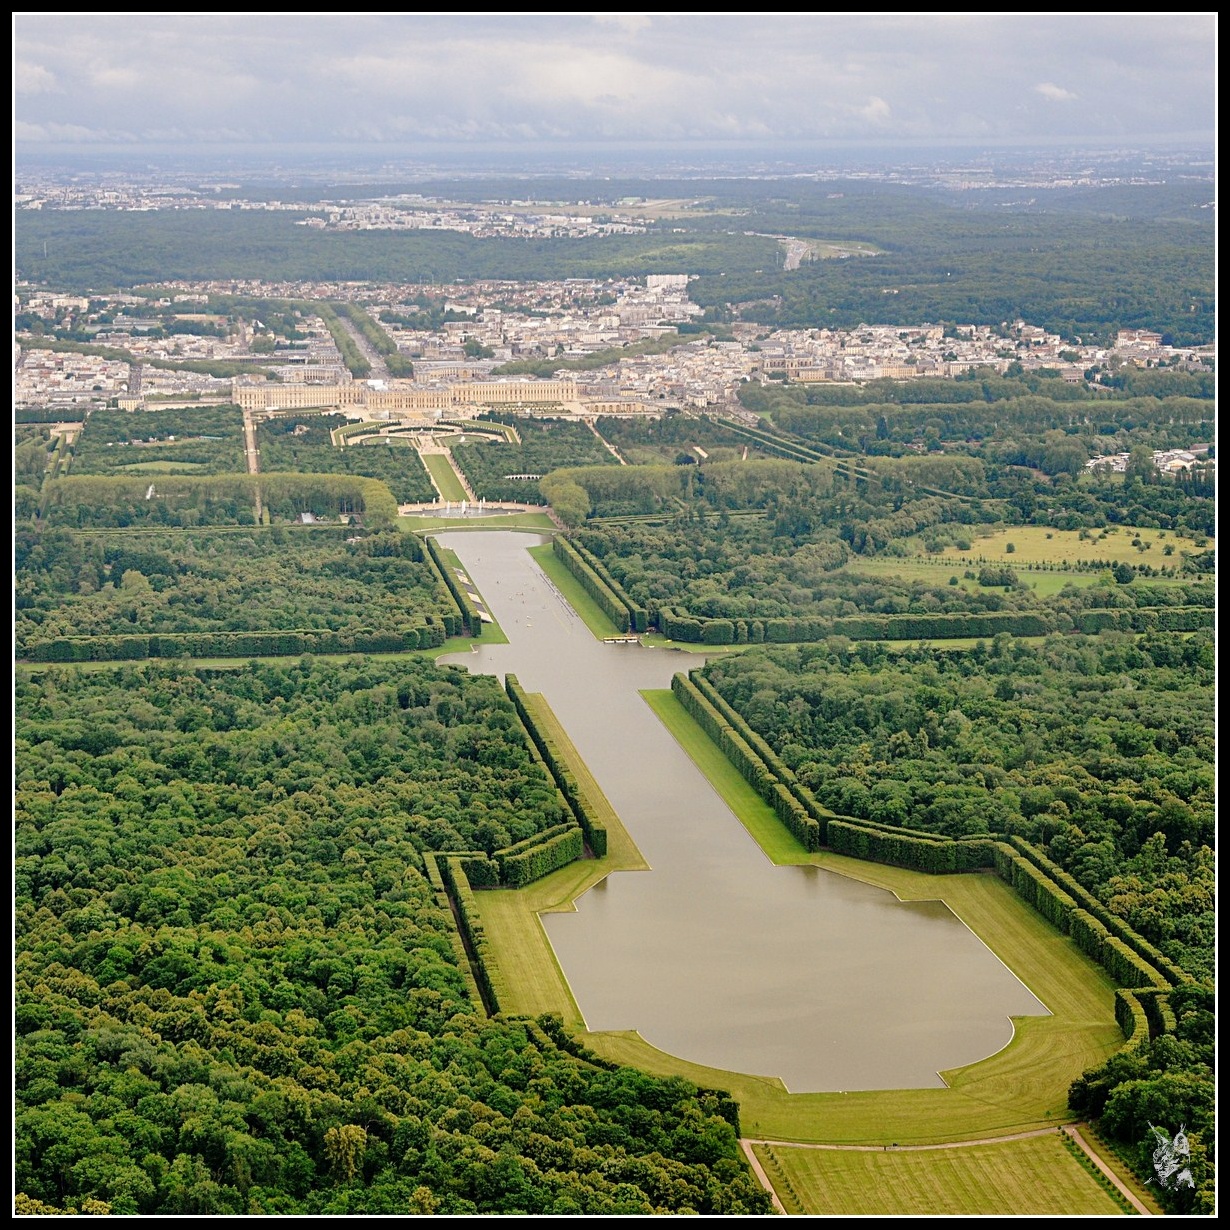 Vue aérienne du chateau de versailles, le Grand Canal - Versailles palace aerial photo